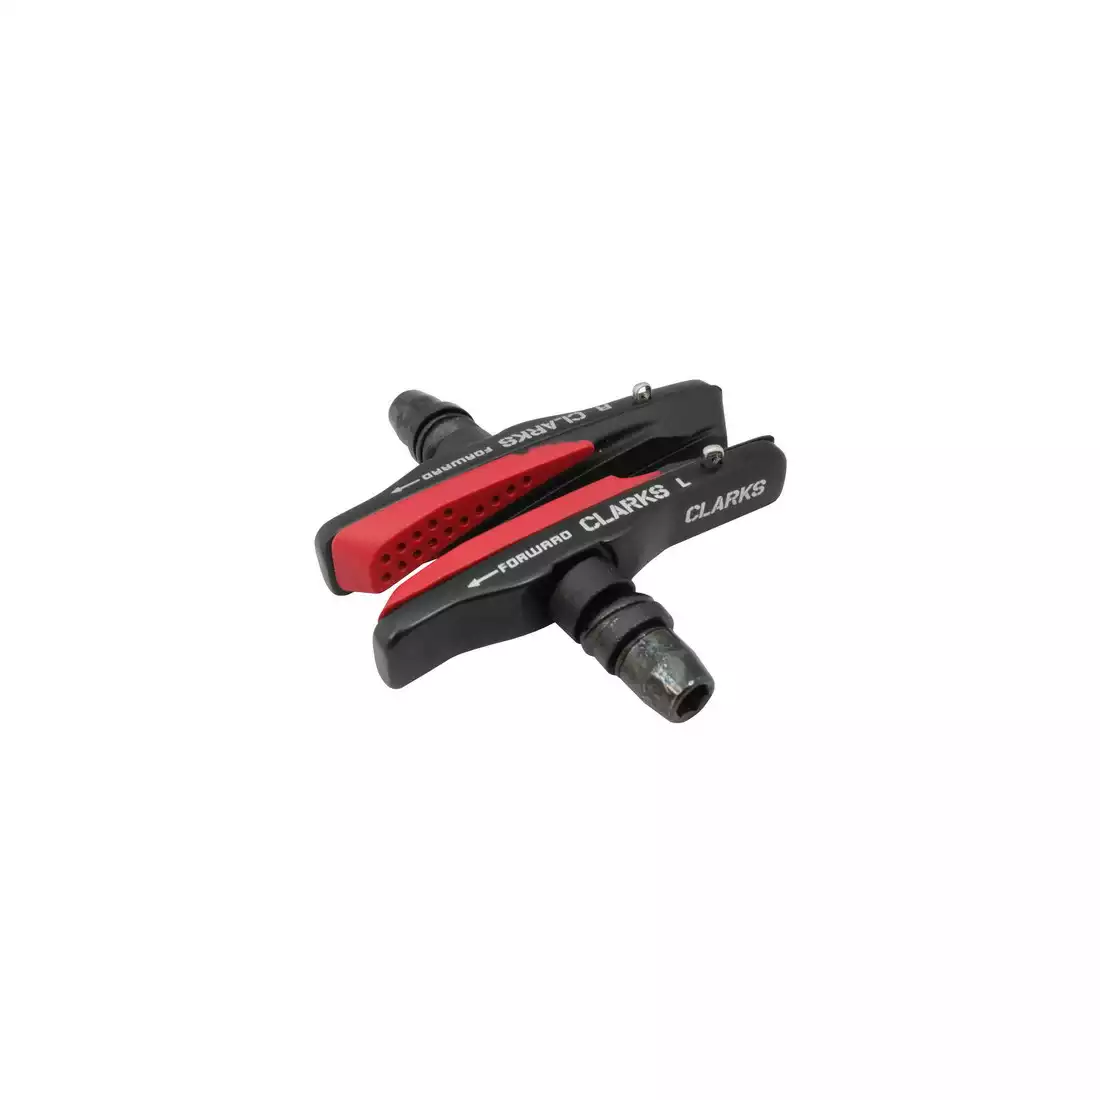 CLARKS CPS959 Brake pads for brakes MTB V-brake, red-black